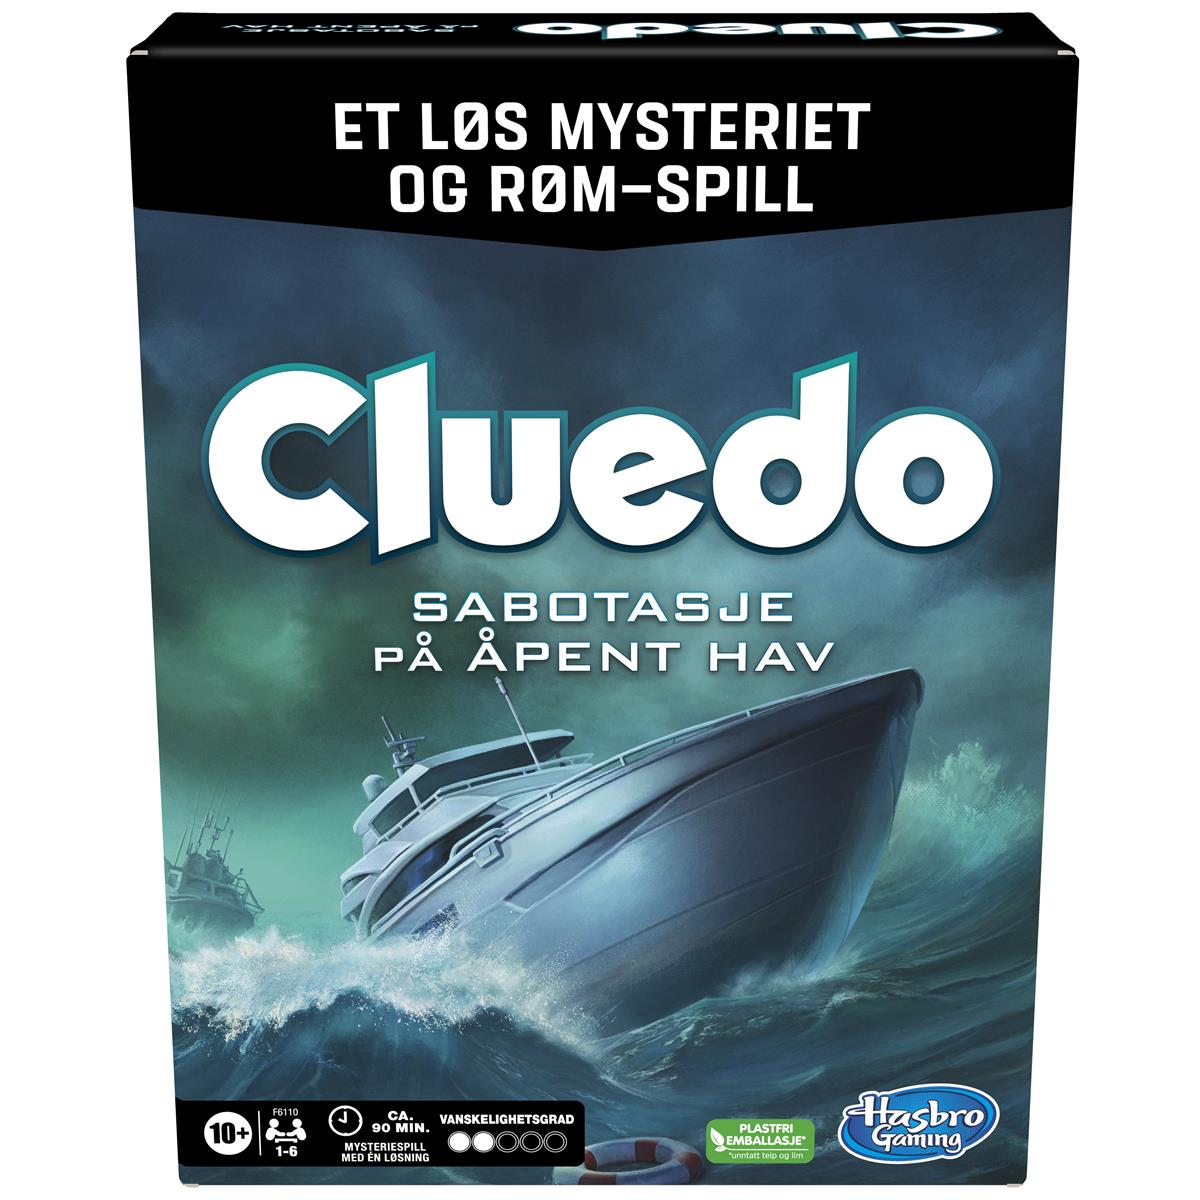 Spill Cluedo Sabotasje på åpent hav